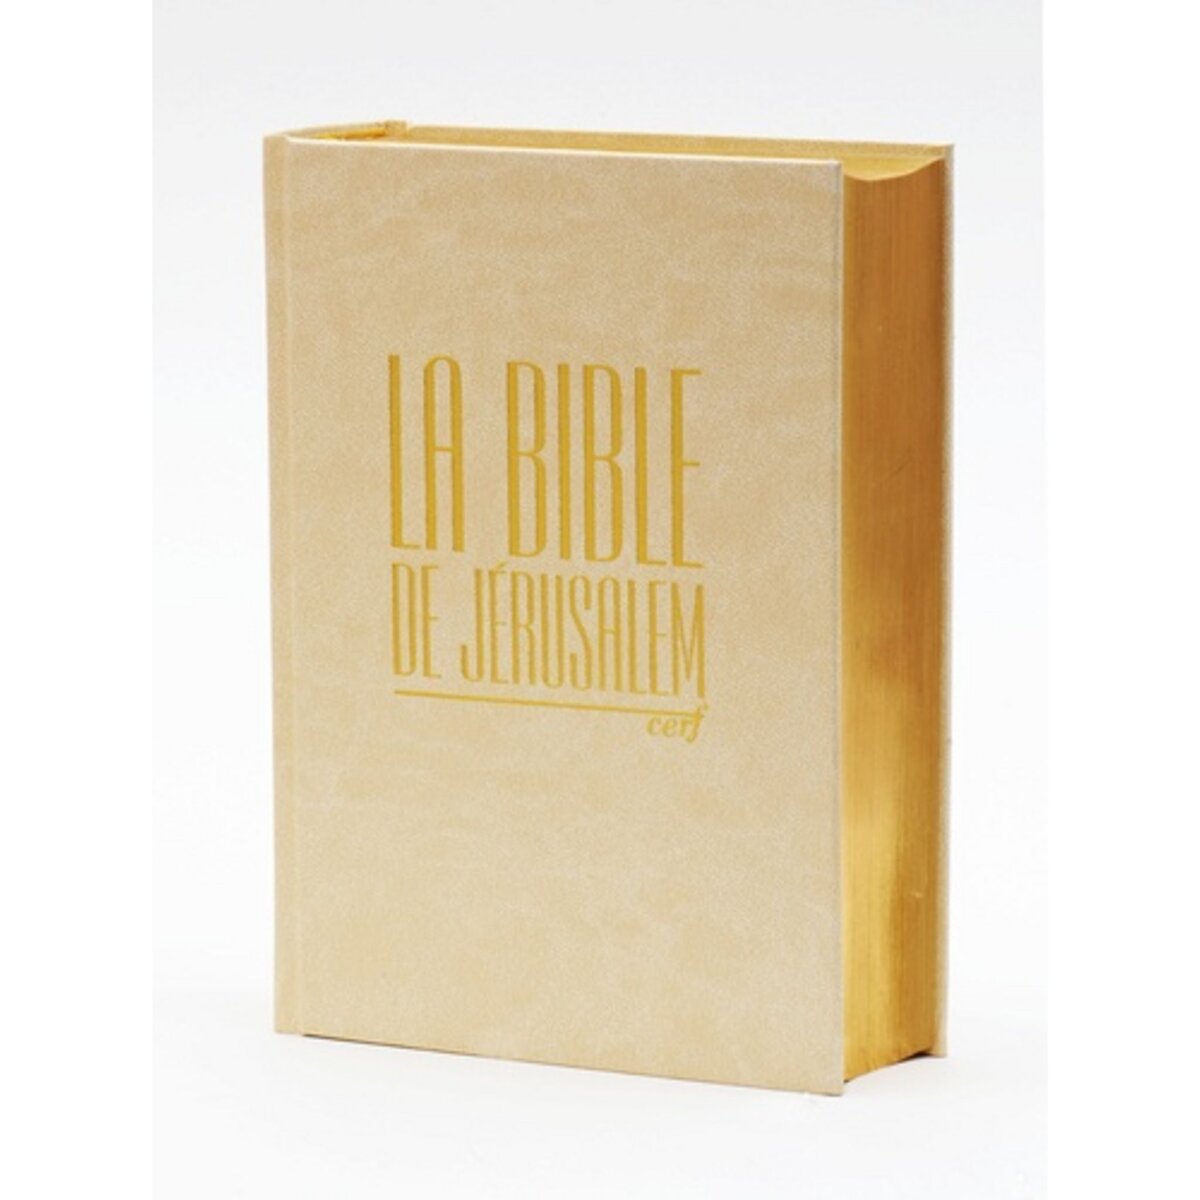  LA BIBLE DE JERUSALEM. EDITION COMPACTE BLANCHE DOREE, Ecole biblique de Jérusalem